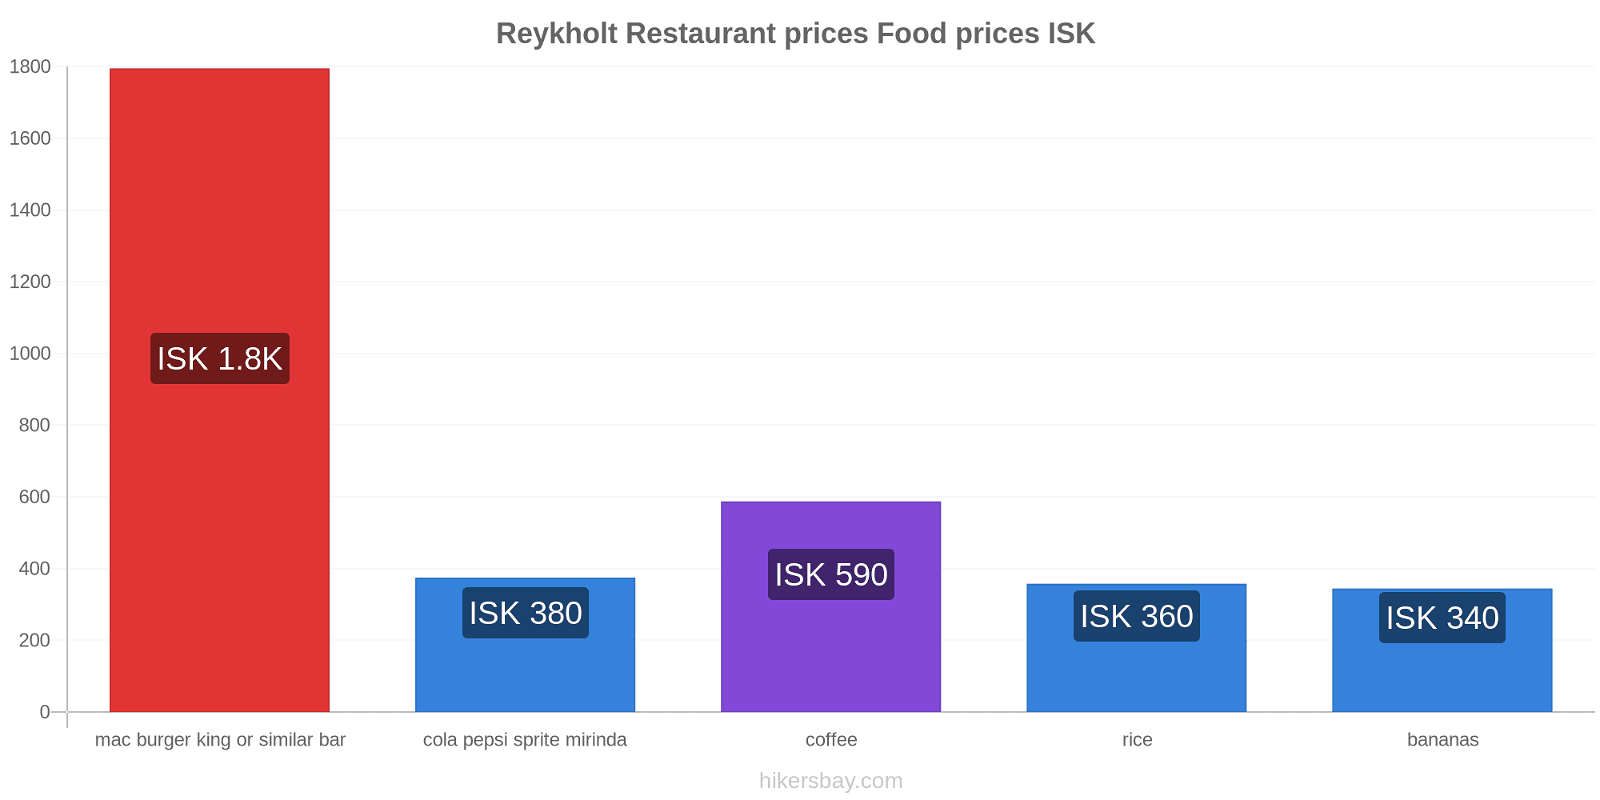 Reykholt price changes hikersbay.com